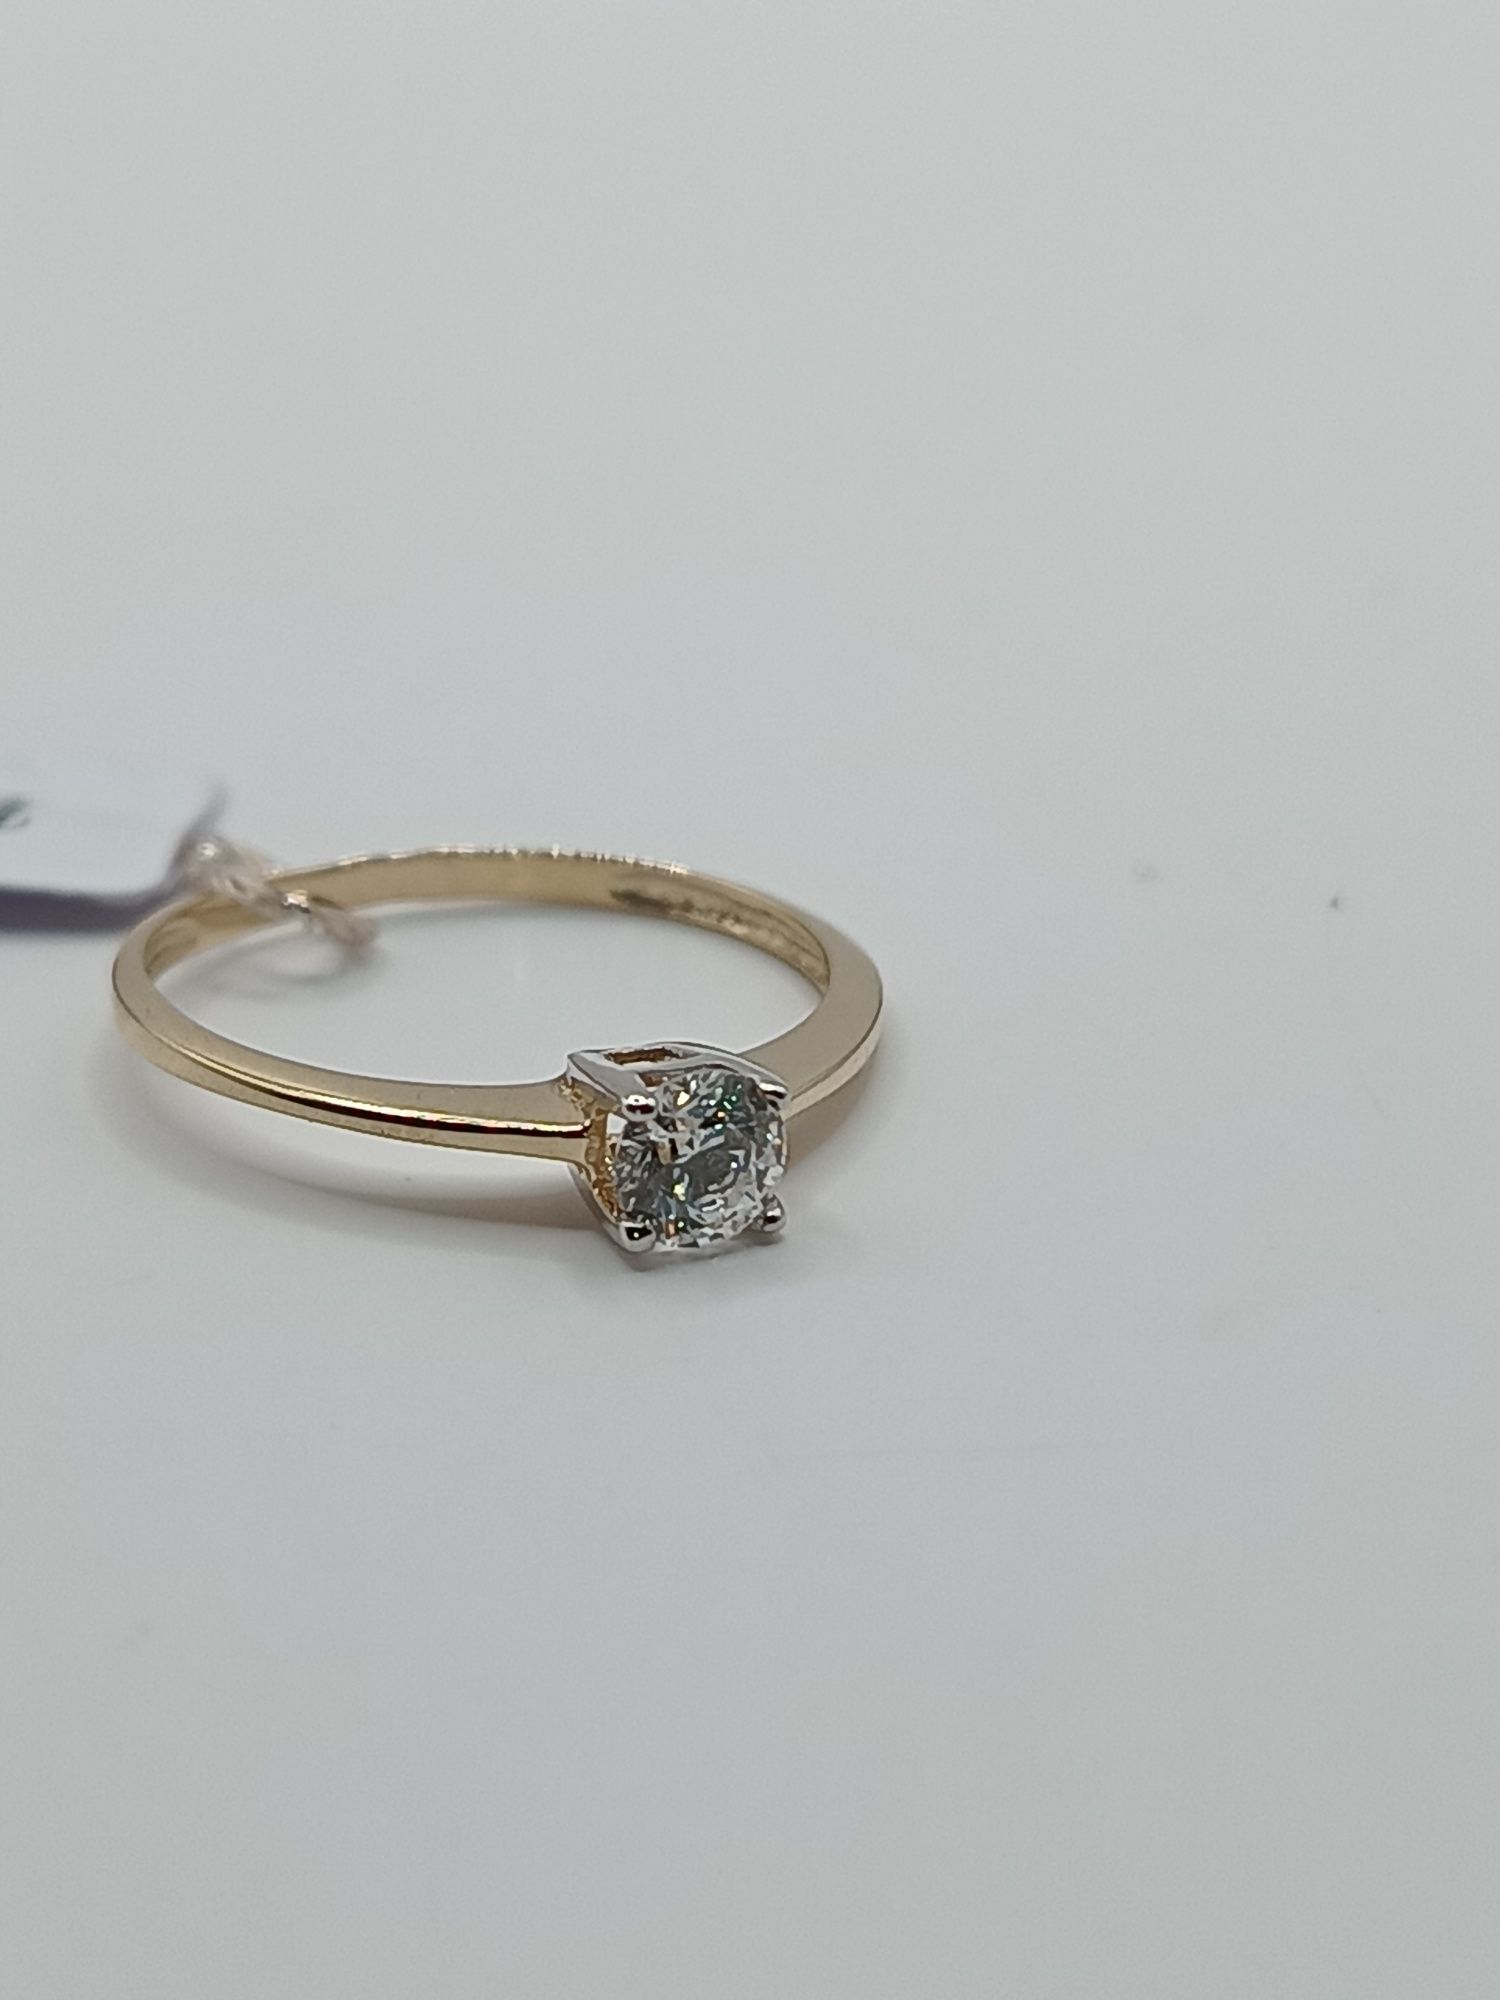 Śliczny delikatny złoty pierścionek zaręczynowy bicolor złoto pr 585